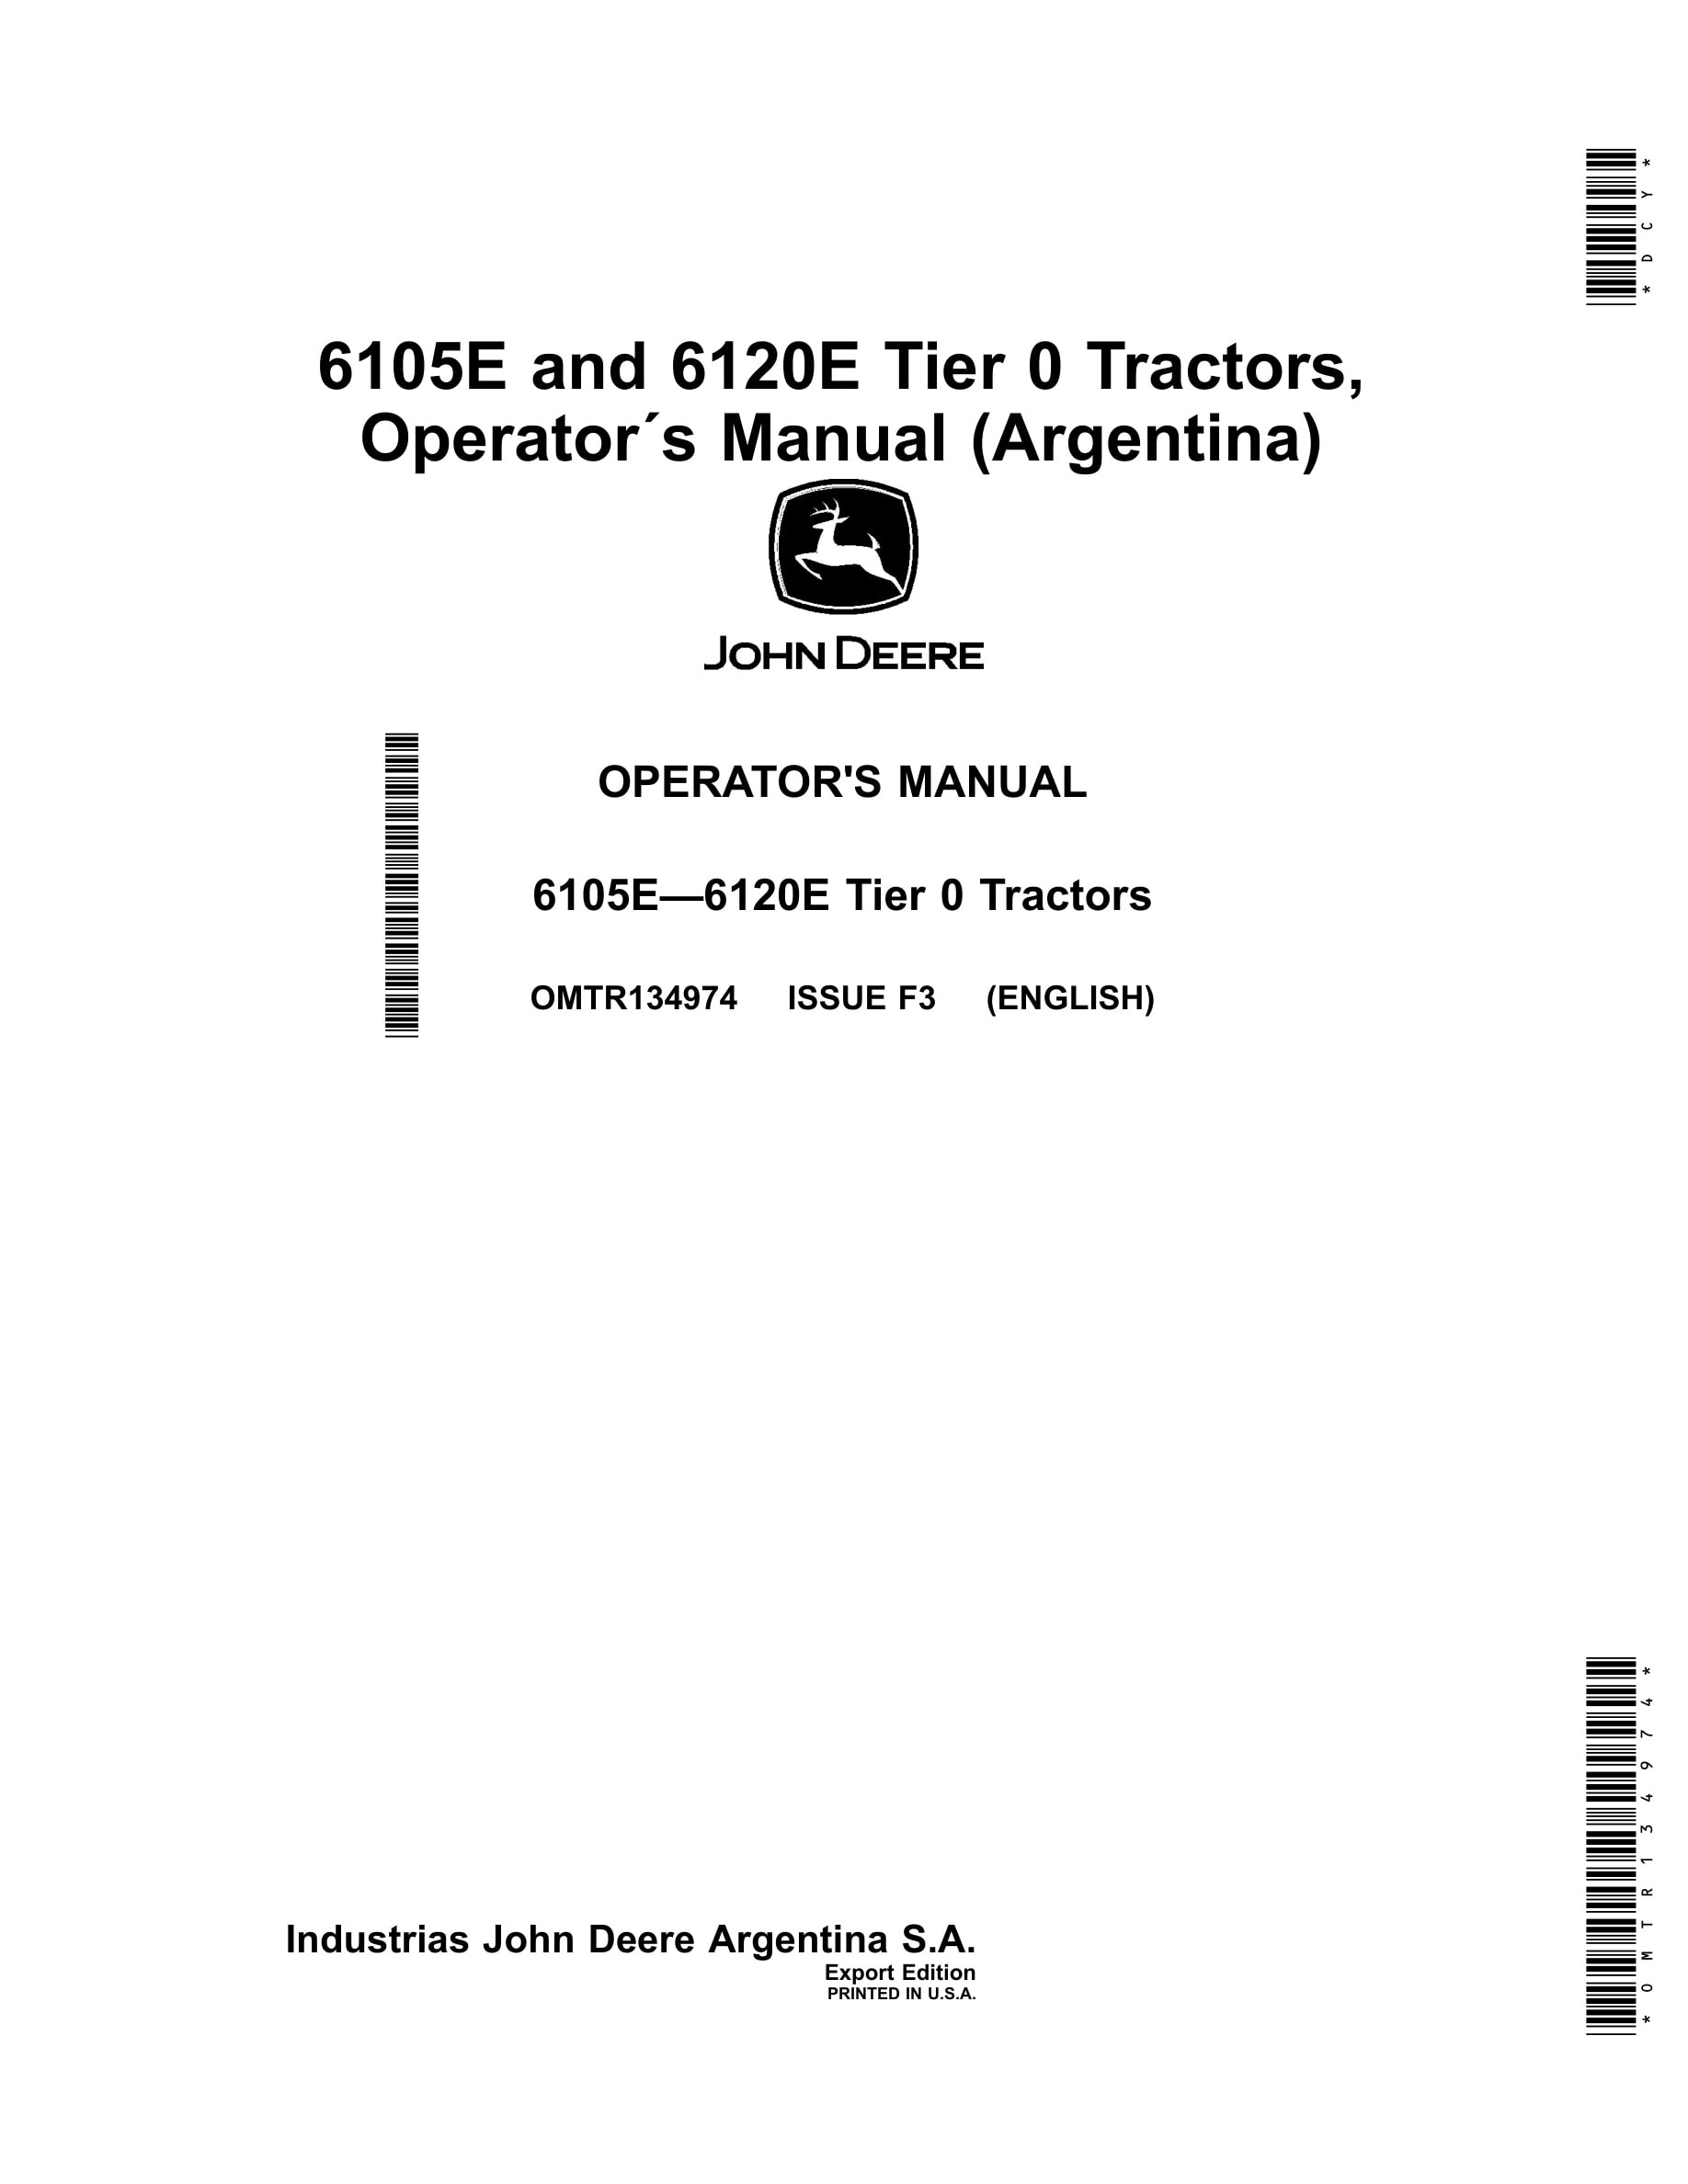 John Deere 6105e And 6120e Tier 0 Tractors Operator Manuals OMTR134974-1